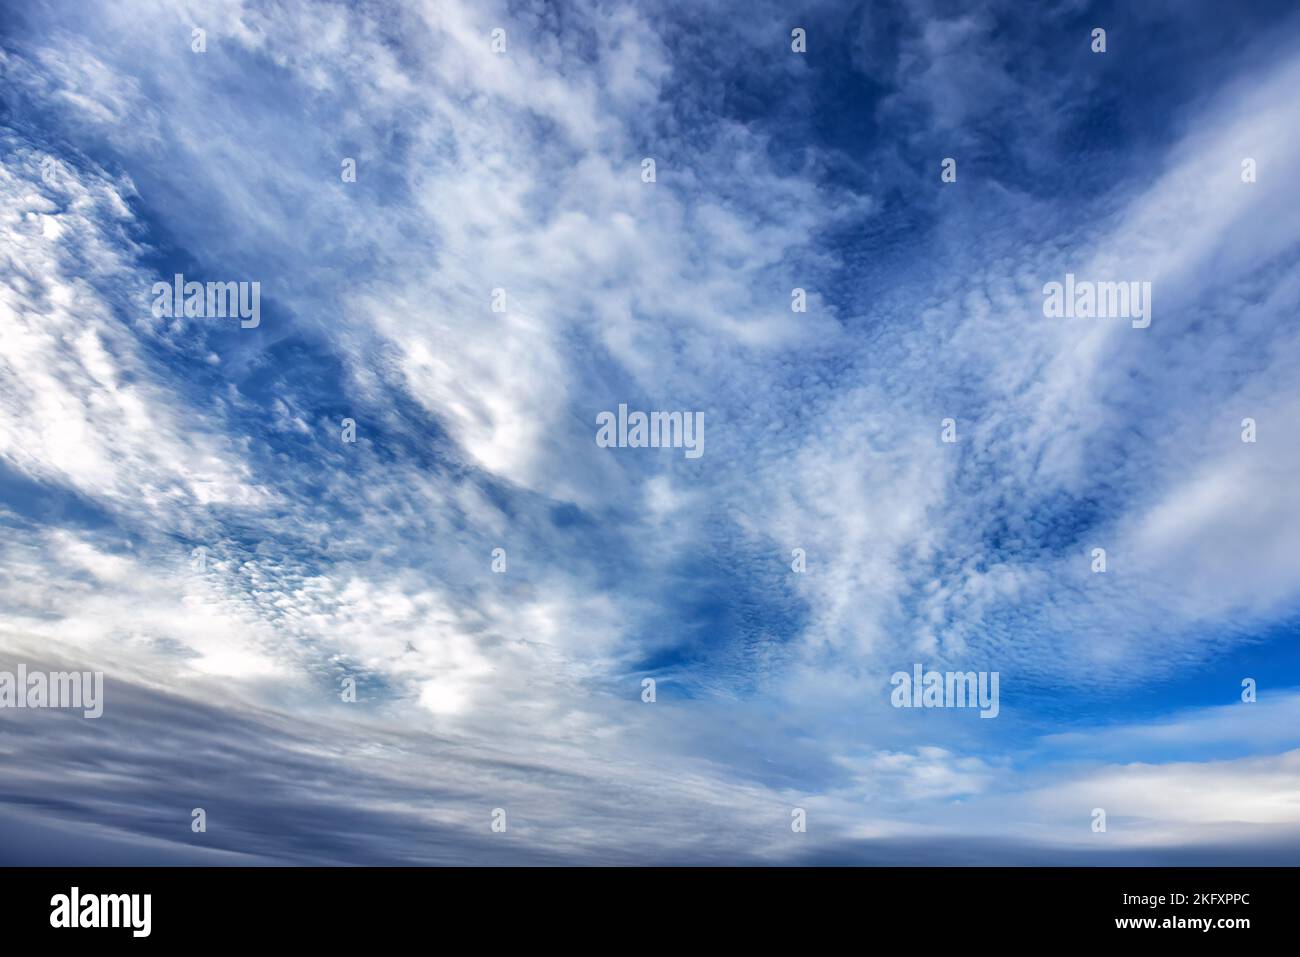 Herbstblauer Himmel und weiße Wolken Hintergrund. Ruhiger Hintergrund, ideal für Compositing und Bildbearbeitung. Stockfoto